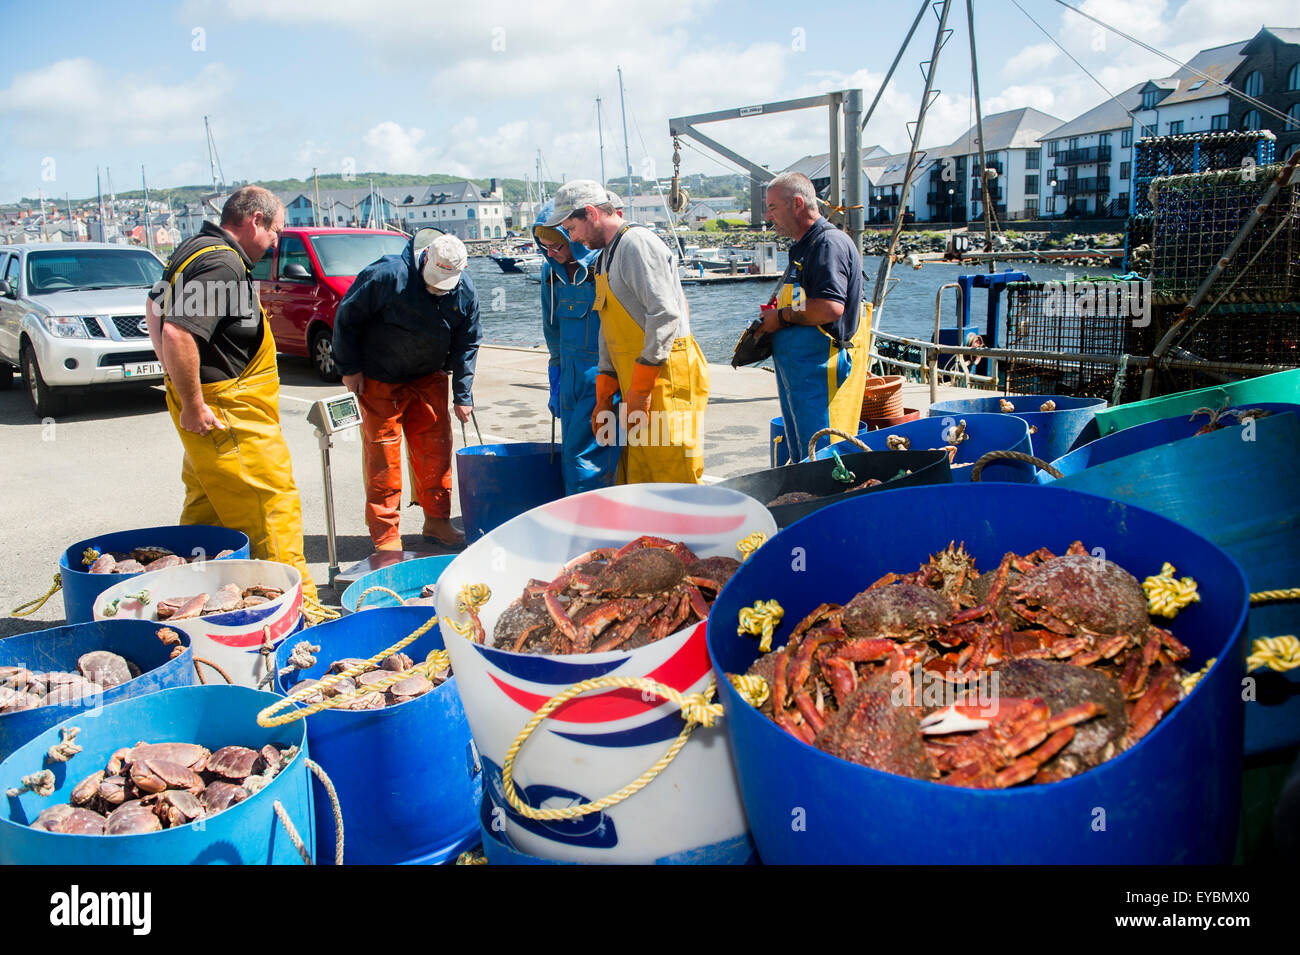 La pêche côtière à Aberystwyth : pêcheurs ayant leurs captures hebdomadaires de la Baie de Cardigan et le homard crabe pesés par un concessionnaire avant d'être chargées sur un camion, à l'exportation vers l'Espagne et le Portugal. Banque D'Images